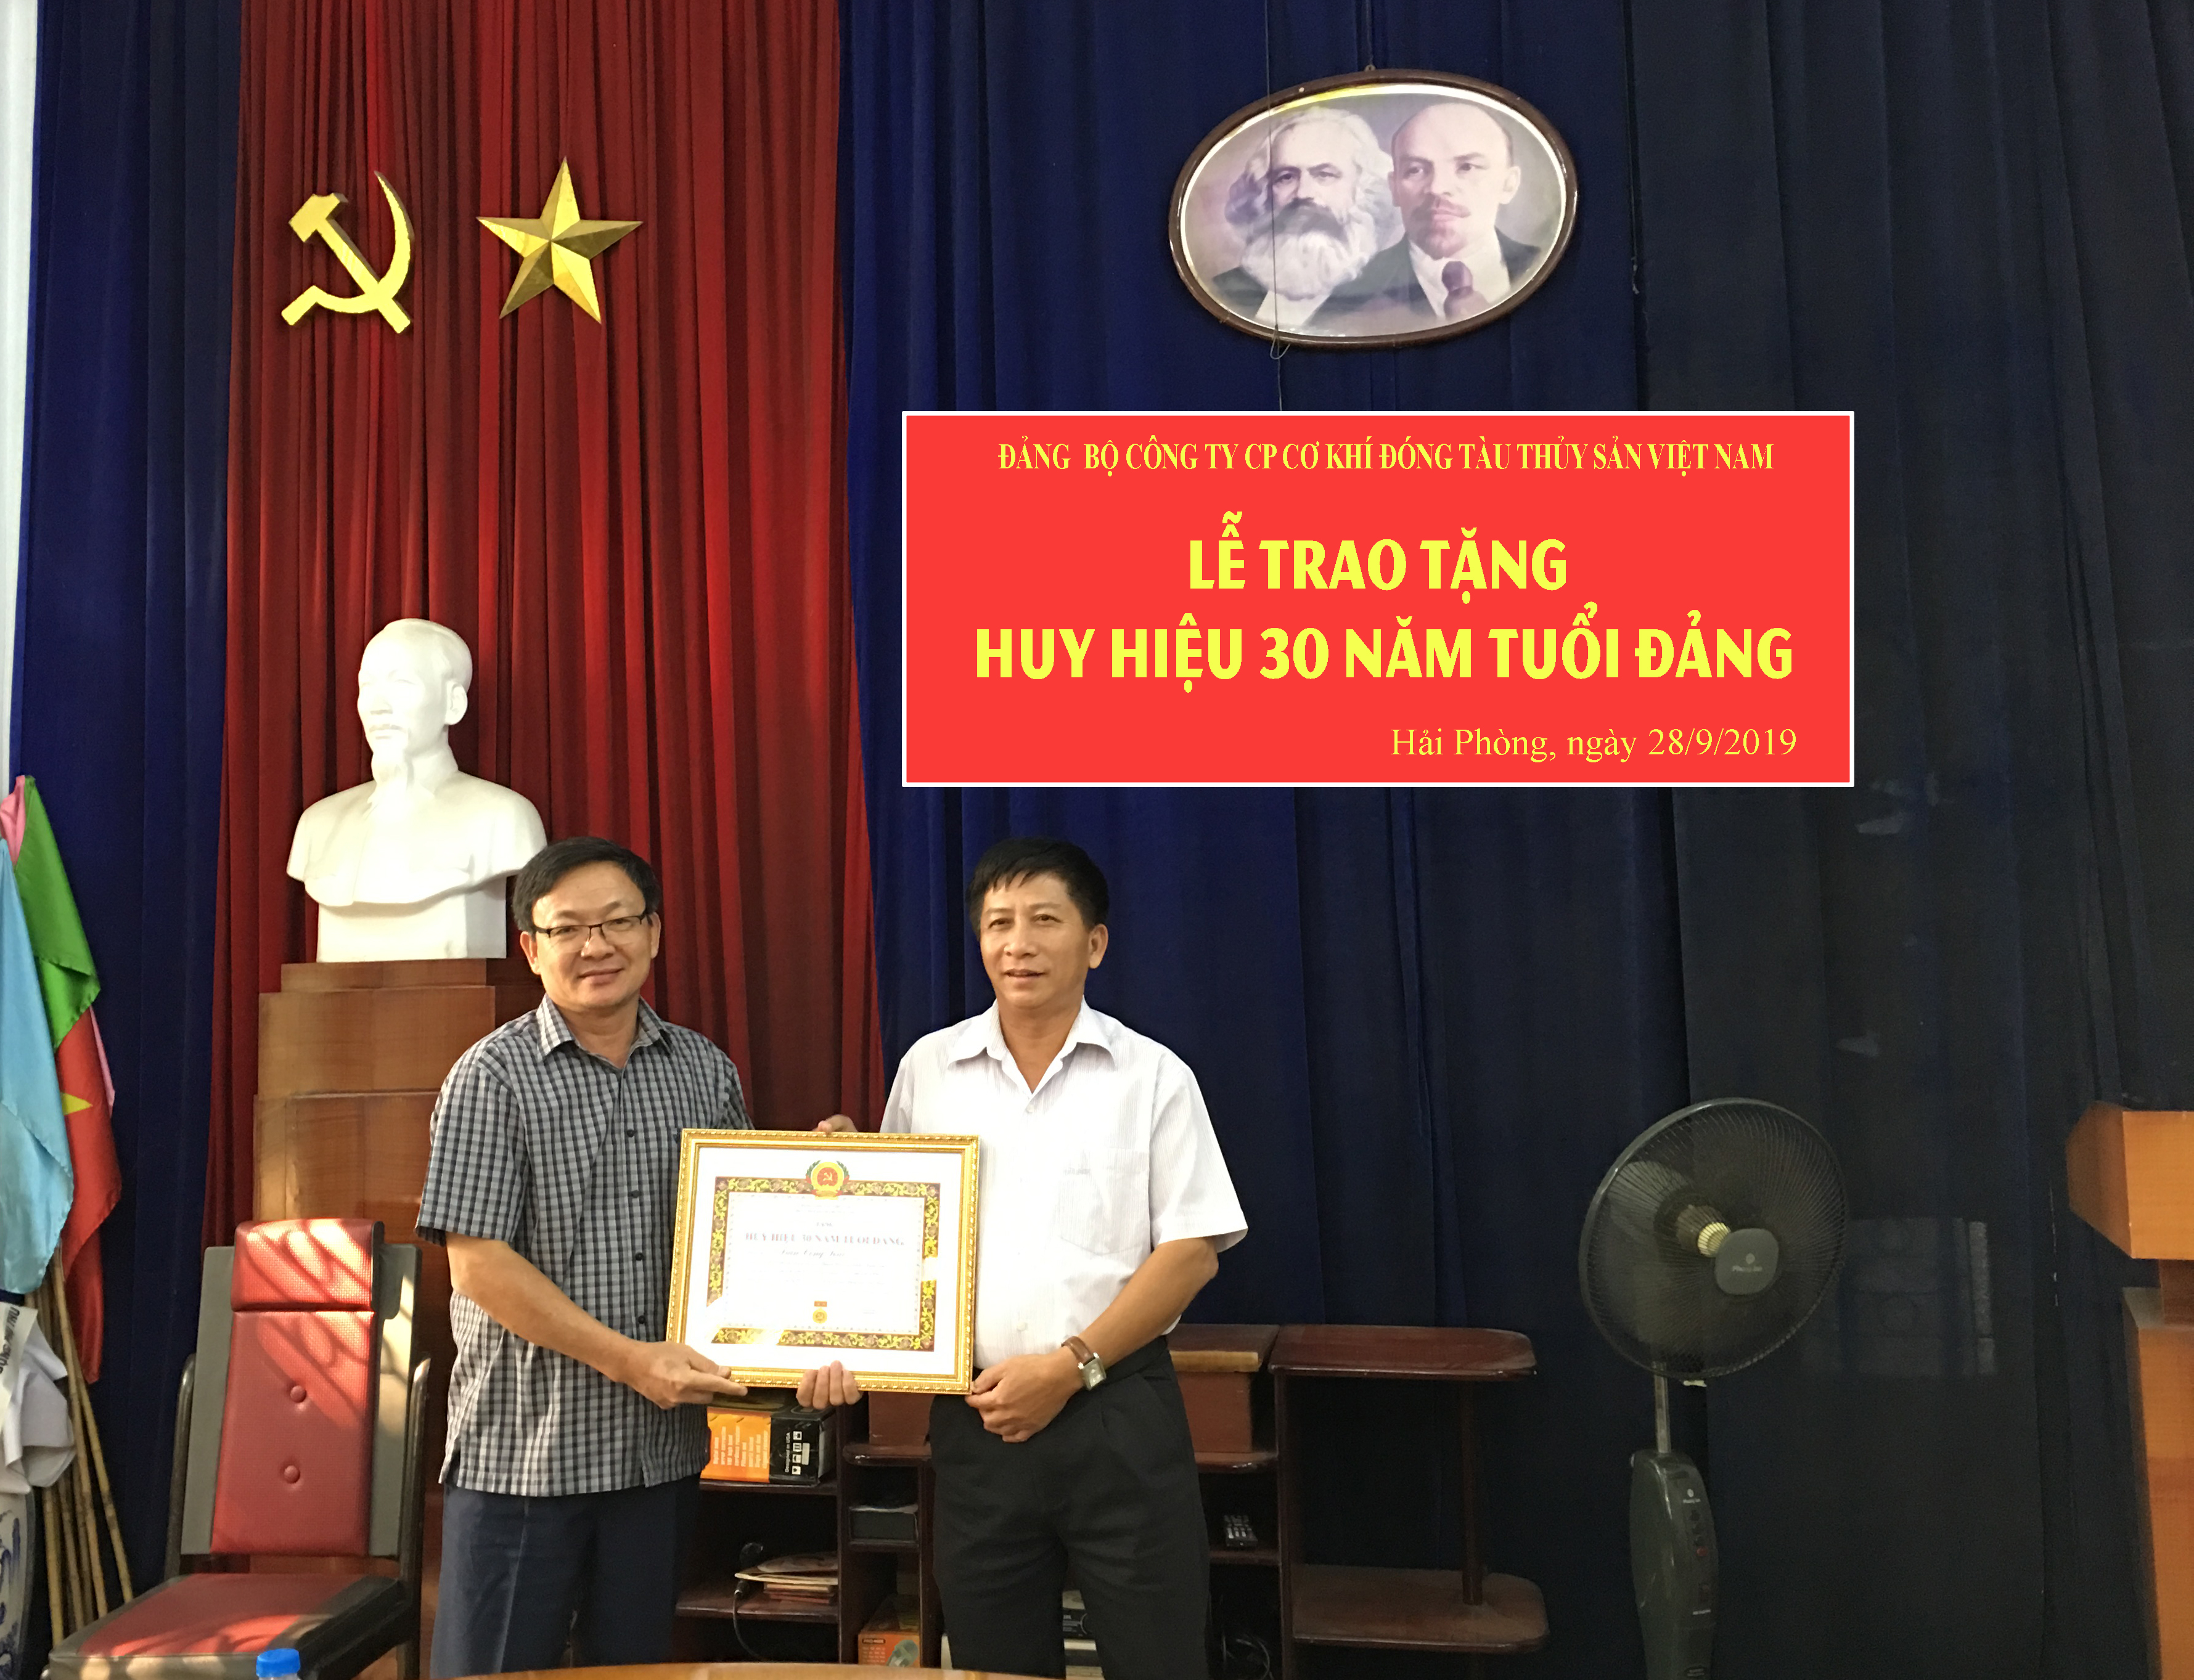 Đảng bộ Công ty CP Cơ khí đóng tàu Thủy sản Việt Nam tổ chức Lễ trao tặng Huy hiệu 30 năm tuổi Đảng cho Đảng viên